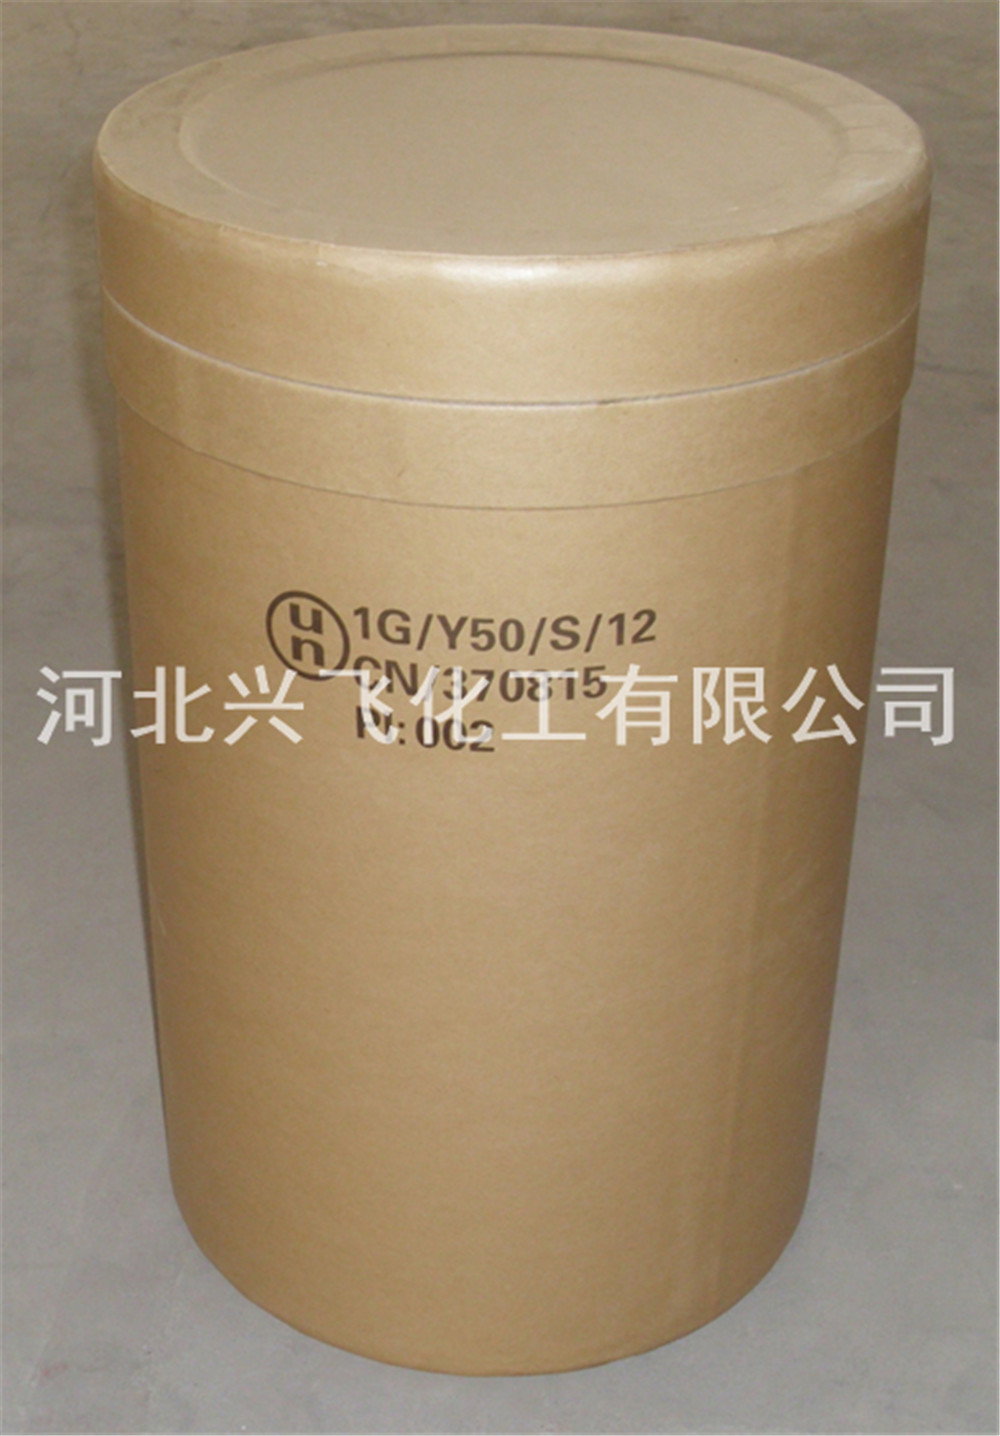 Dichlorisokyanurát sodný dihydrát (1)